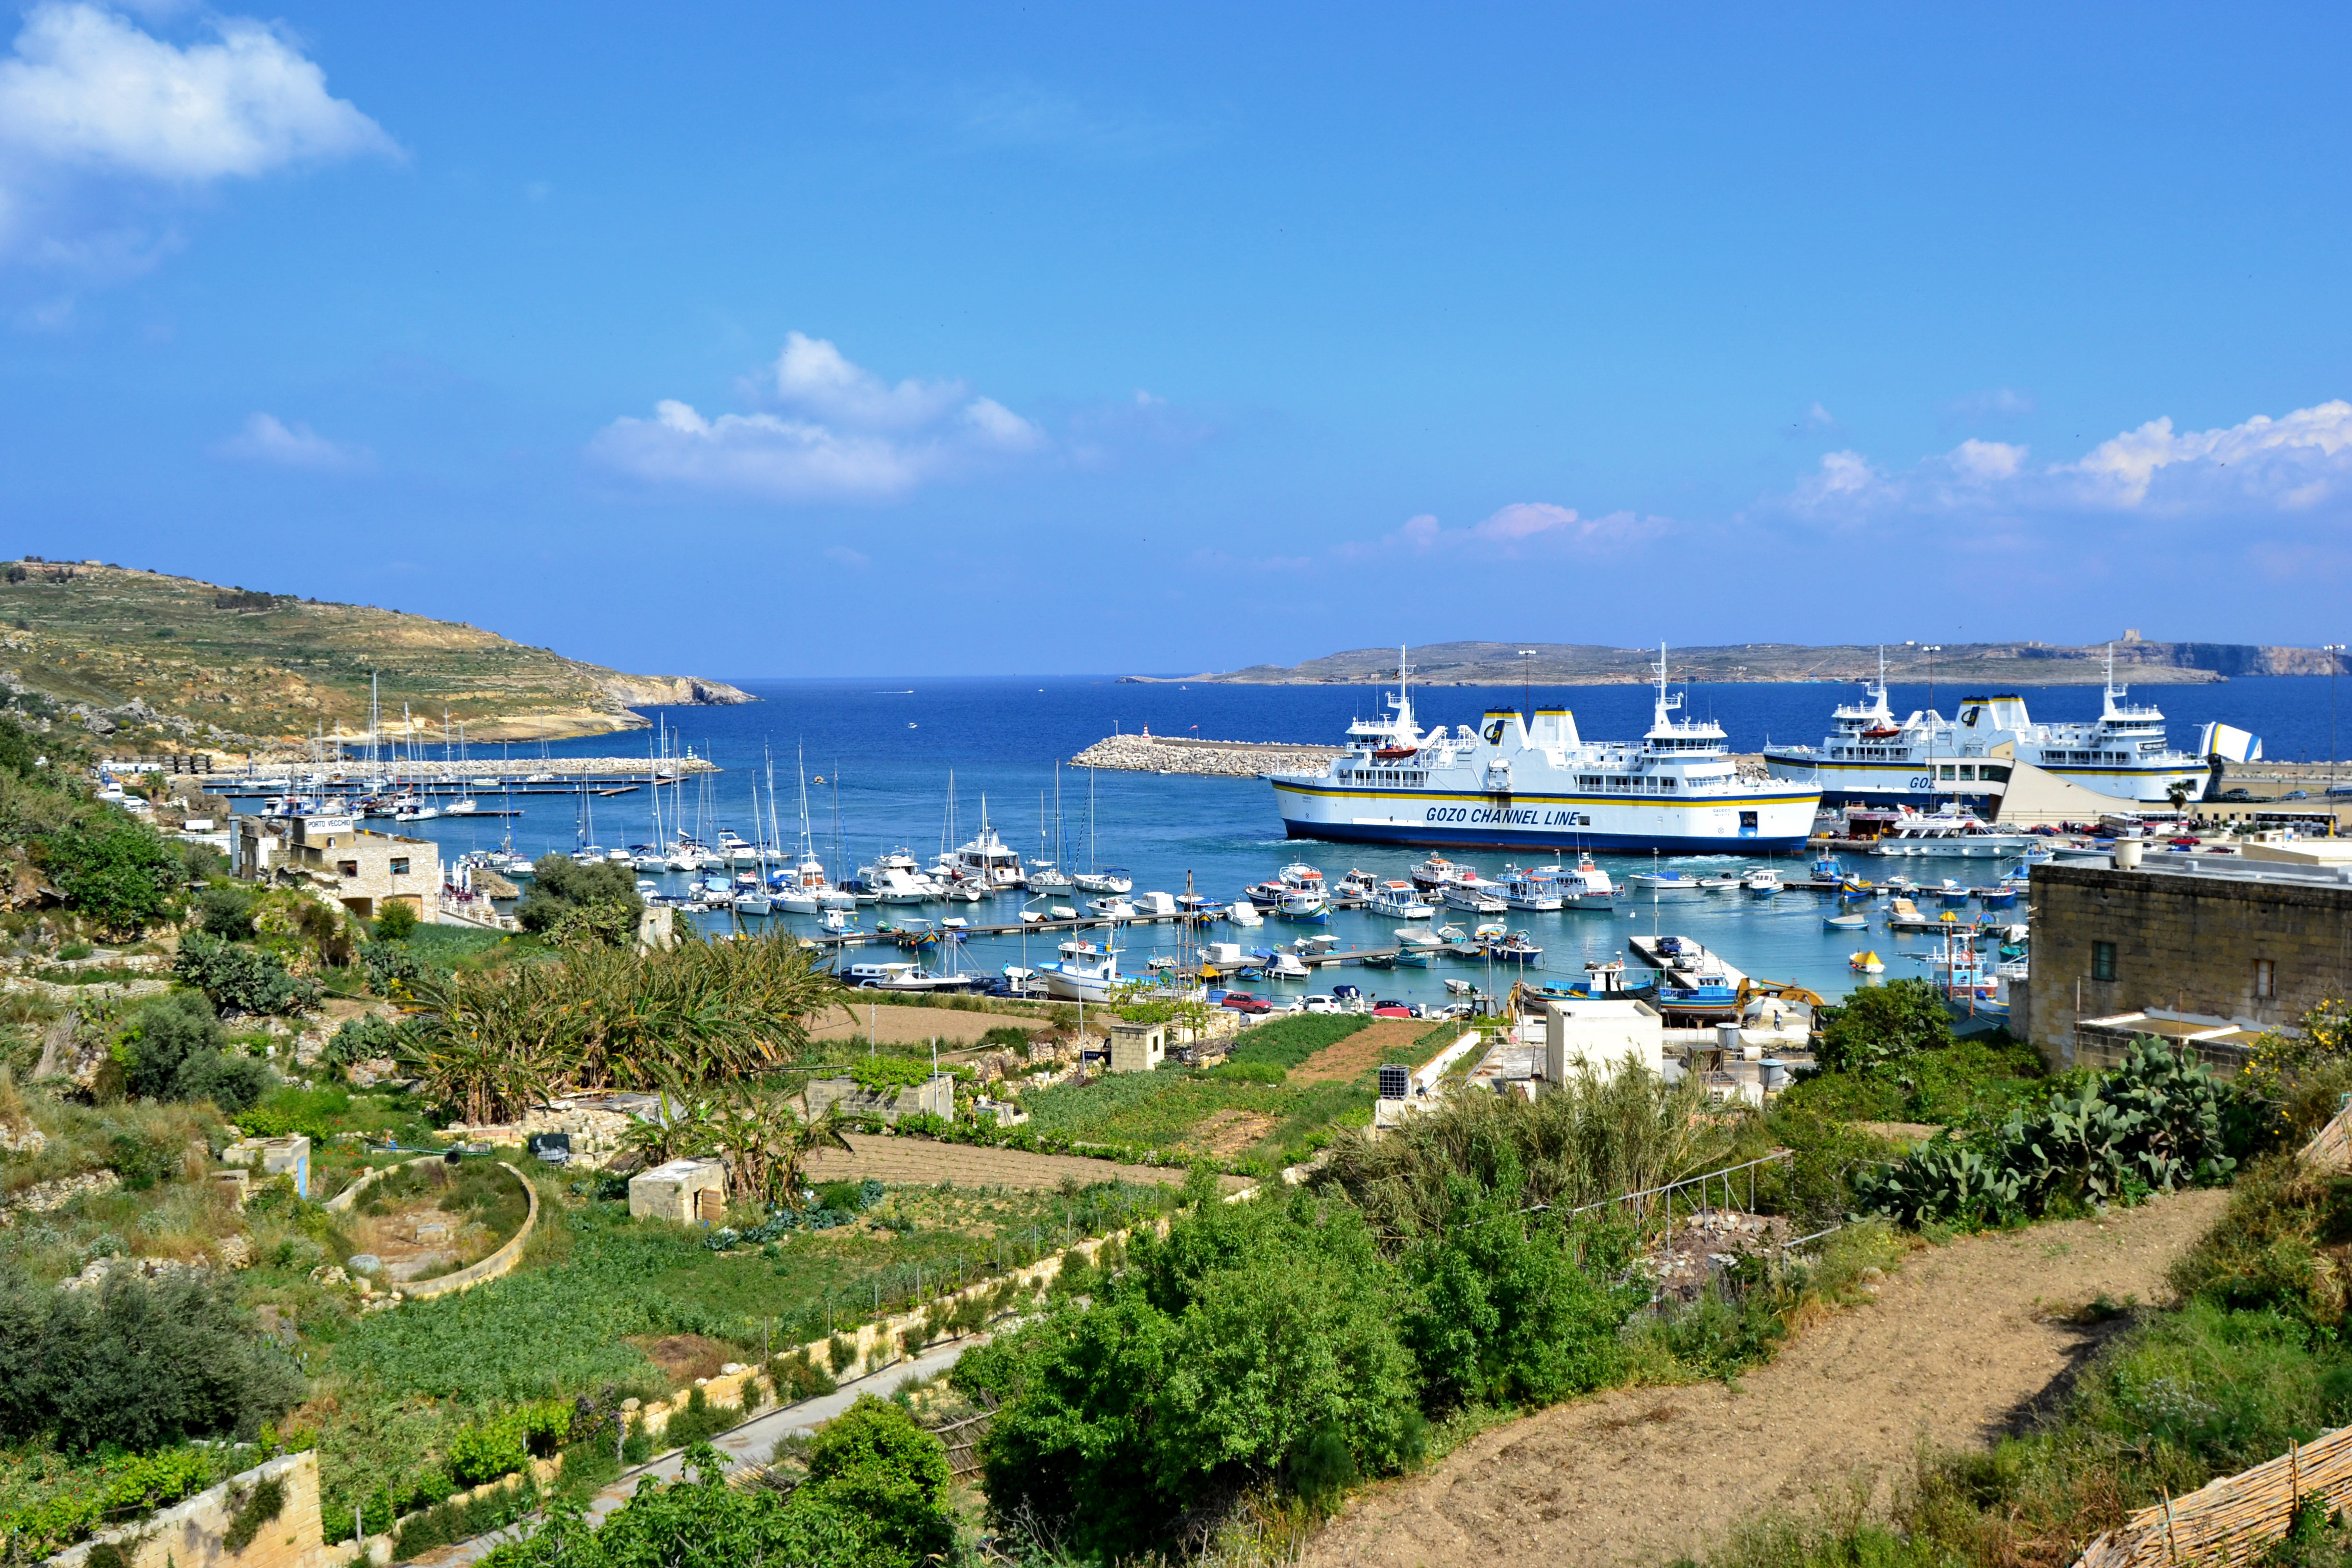 Lej bil på Malta til ferien på Gozo